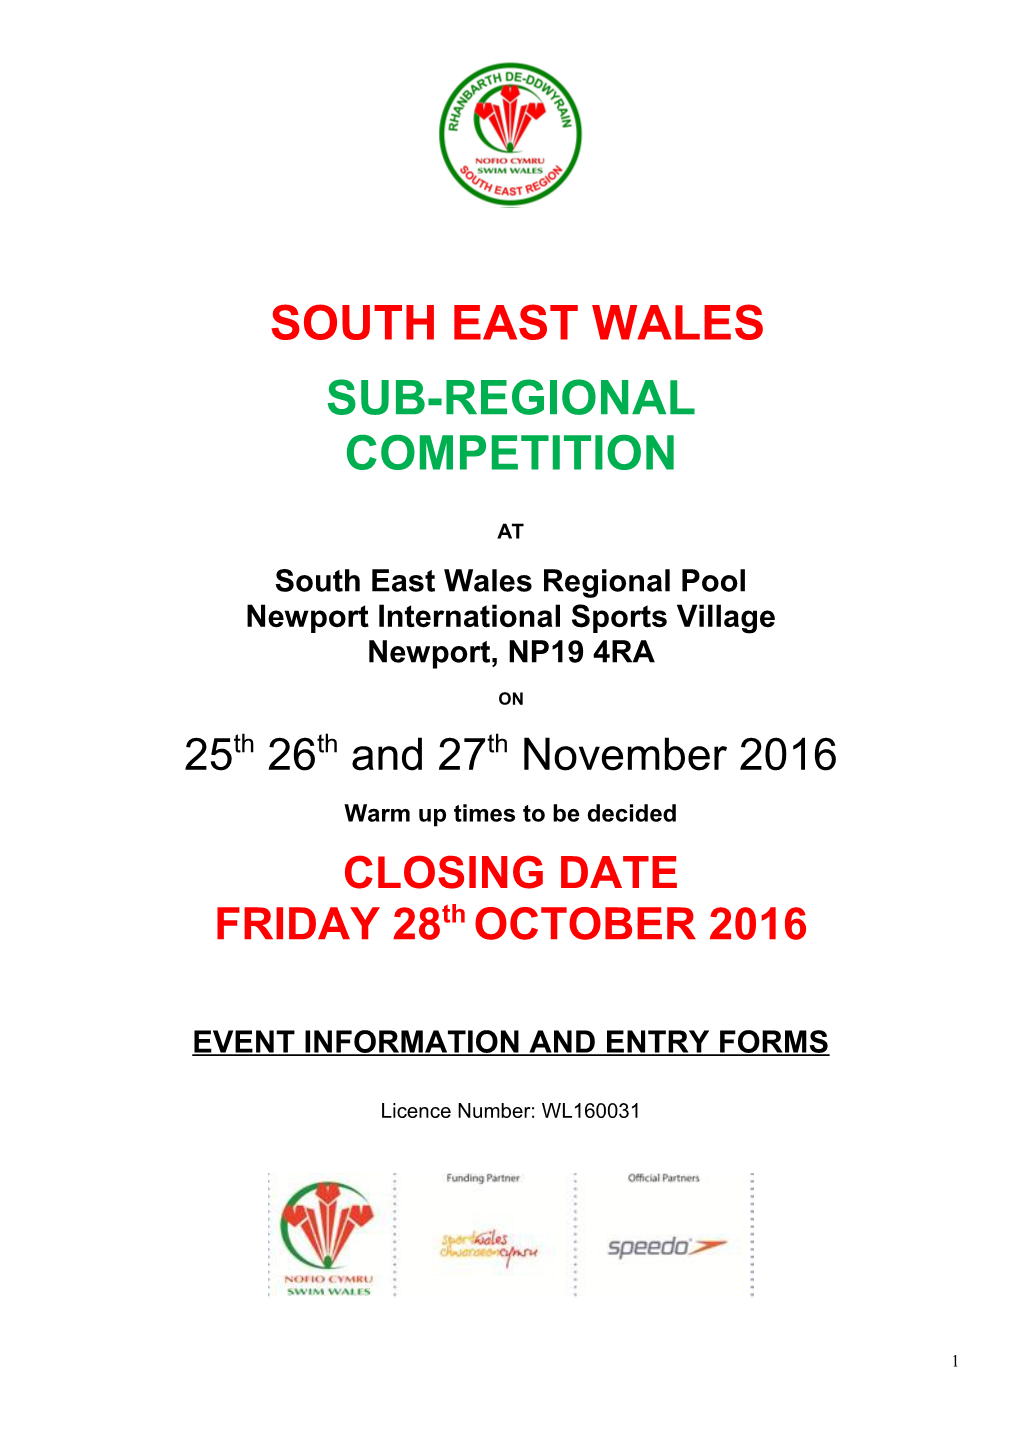 South East Wales Regional Pool